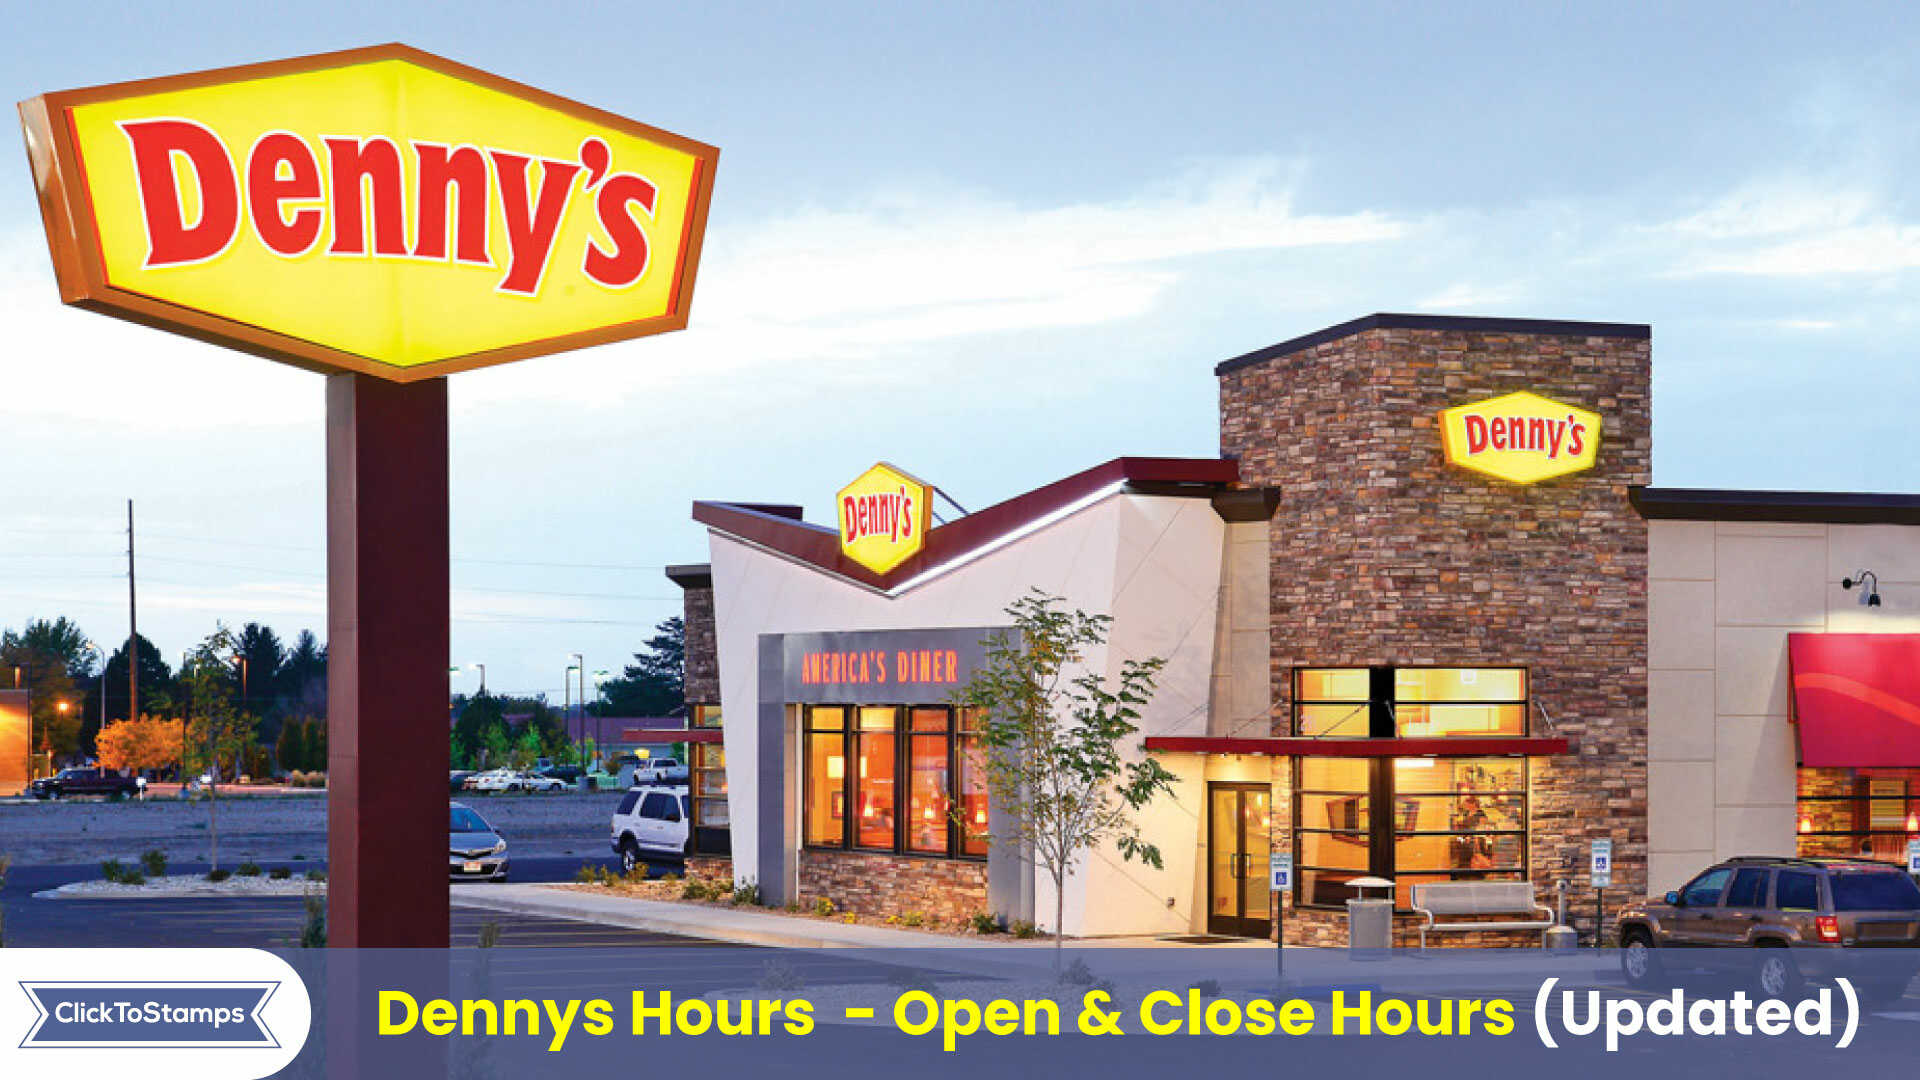 Dennys Hours